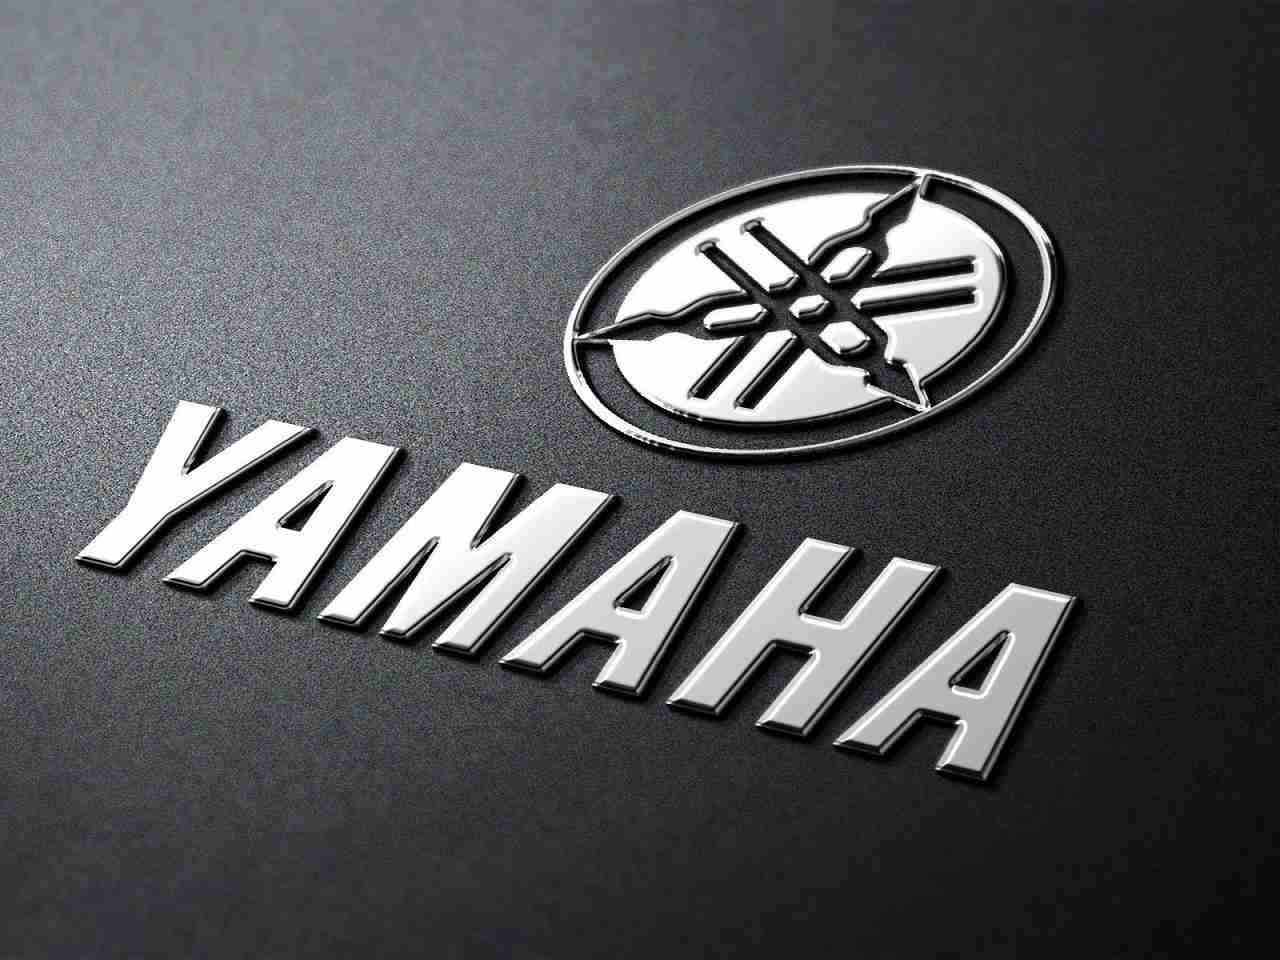 खत्म हुआ इंतज़ार! 18 जून को मार्किट में उतरेगी Yamaha की FZ-X 150cc मोटरसाइकिल